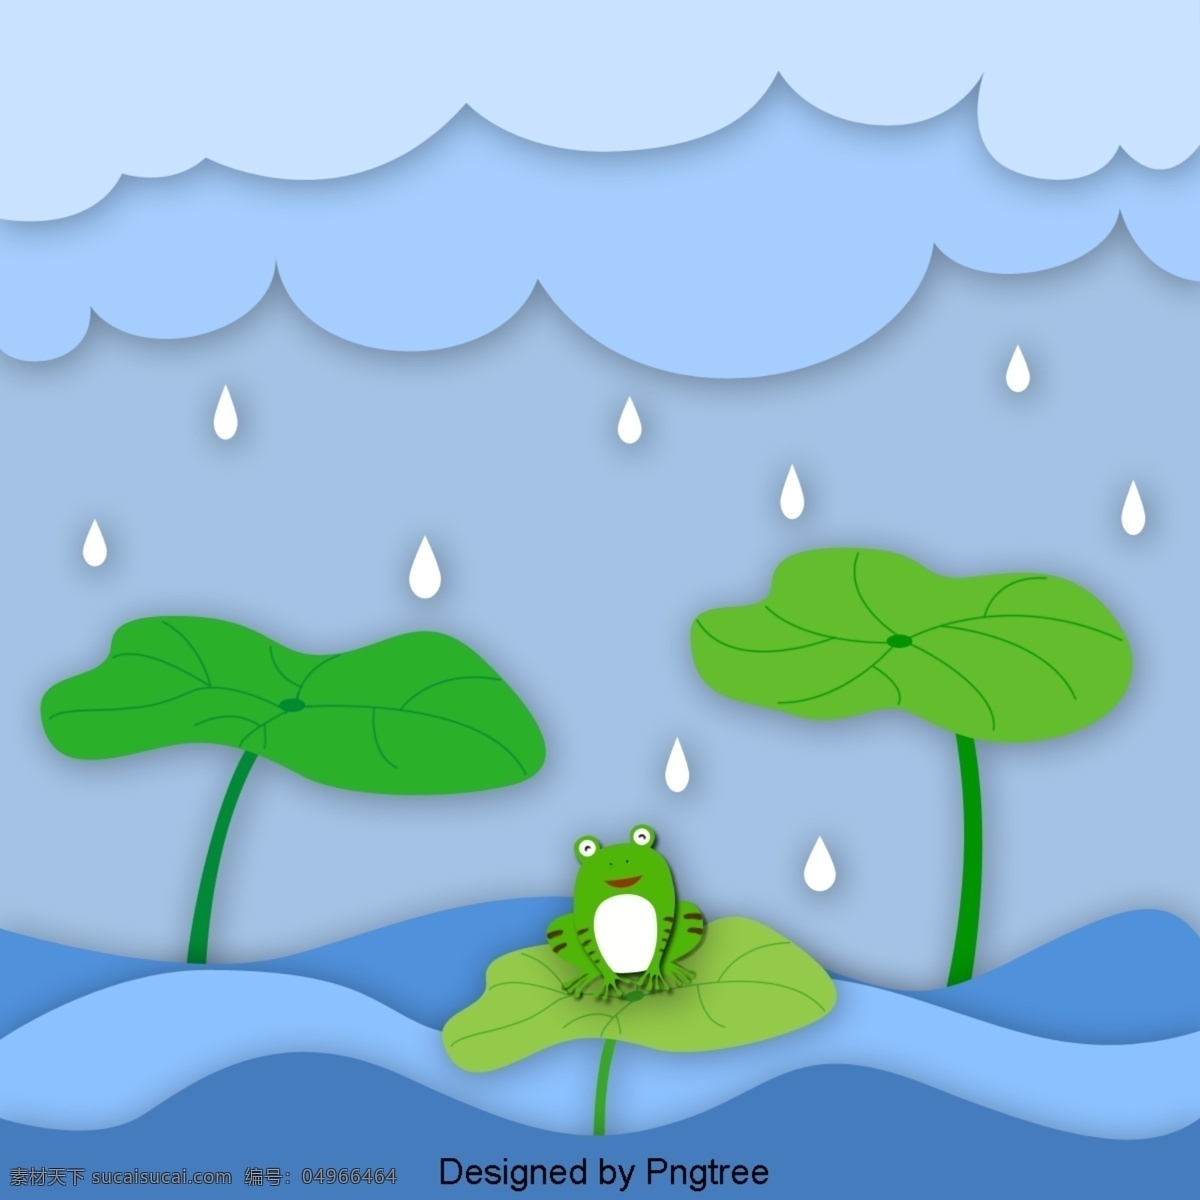 卡通 手绘 池塘 青蛙 荷叶 雨天 雨 滴水 可爱